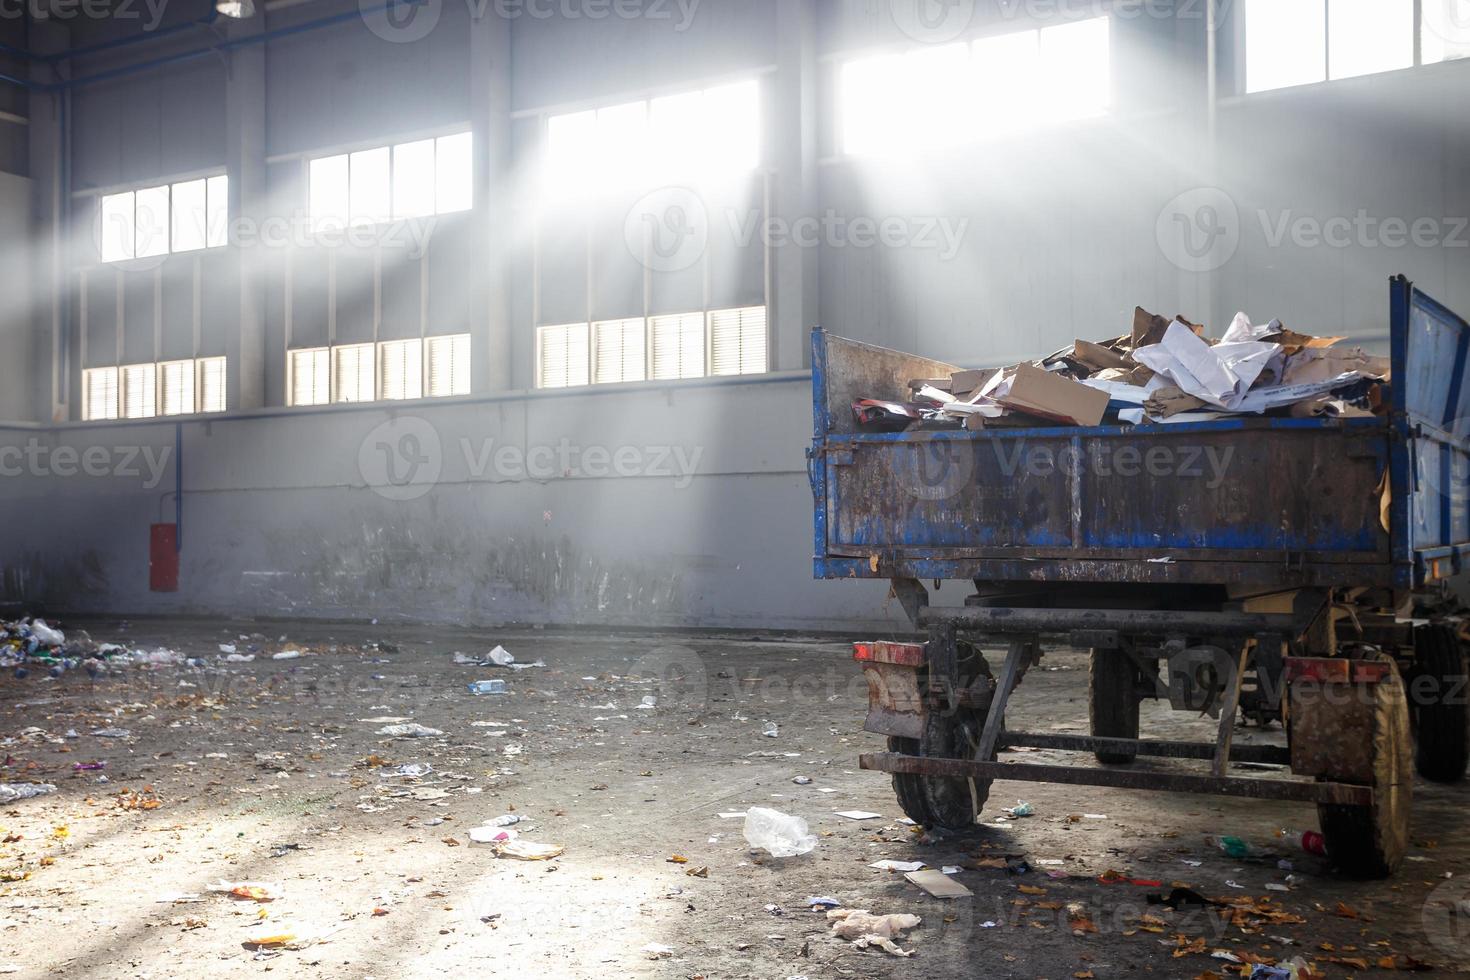 afvalsorteer- en recyclingwerkplaats met aanhanger bij de afvalverwerkingsfabriek met zonnestralen. gescheiden afvalinzameling. recycling en opslag van afval voor verdere verwijdering. foto